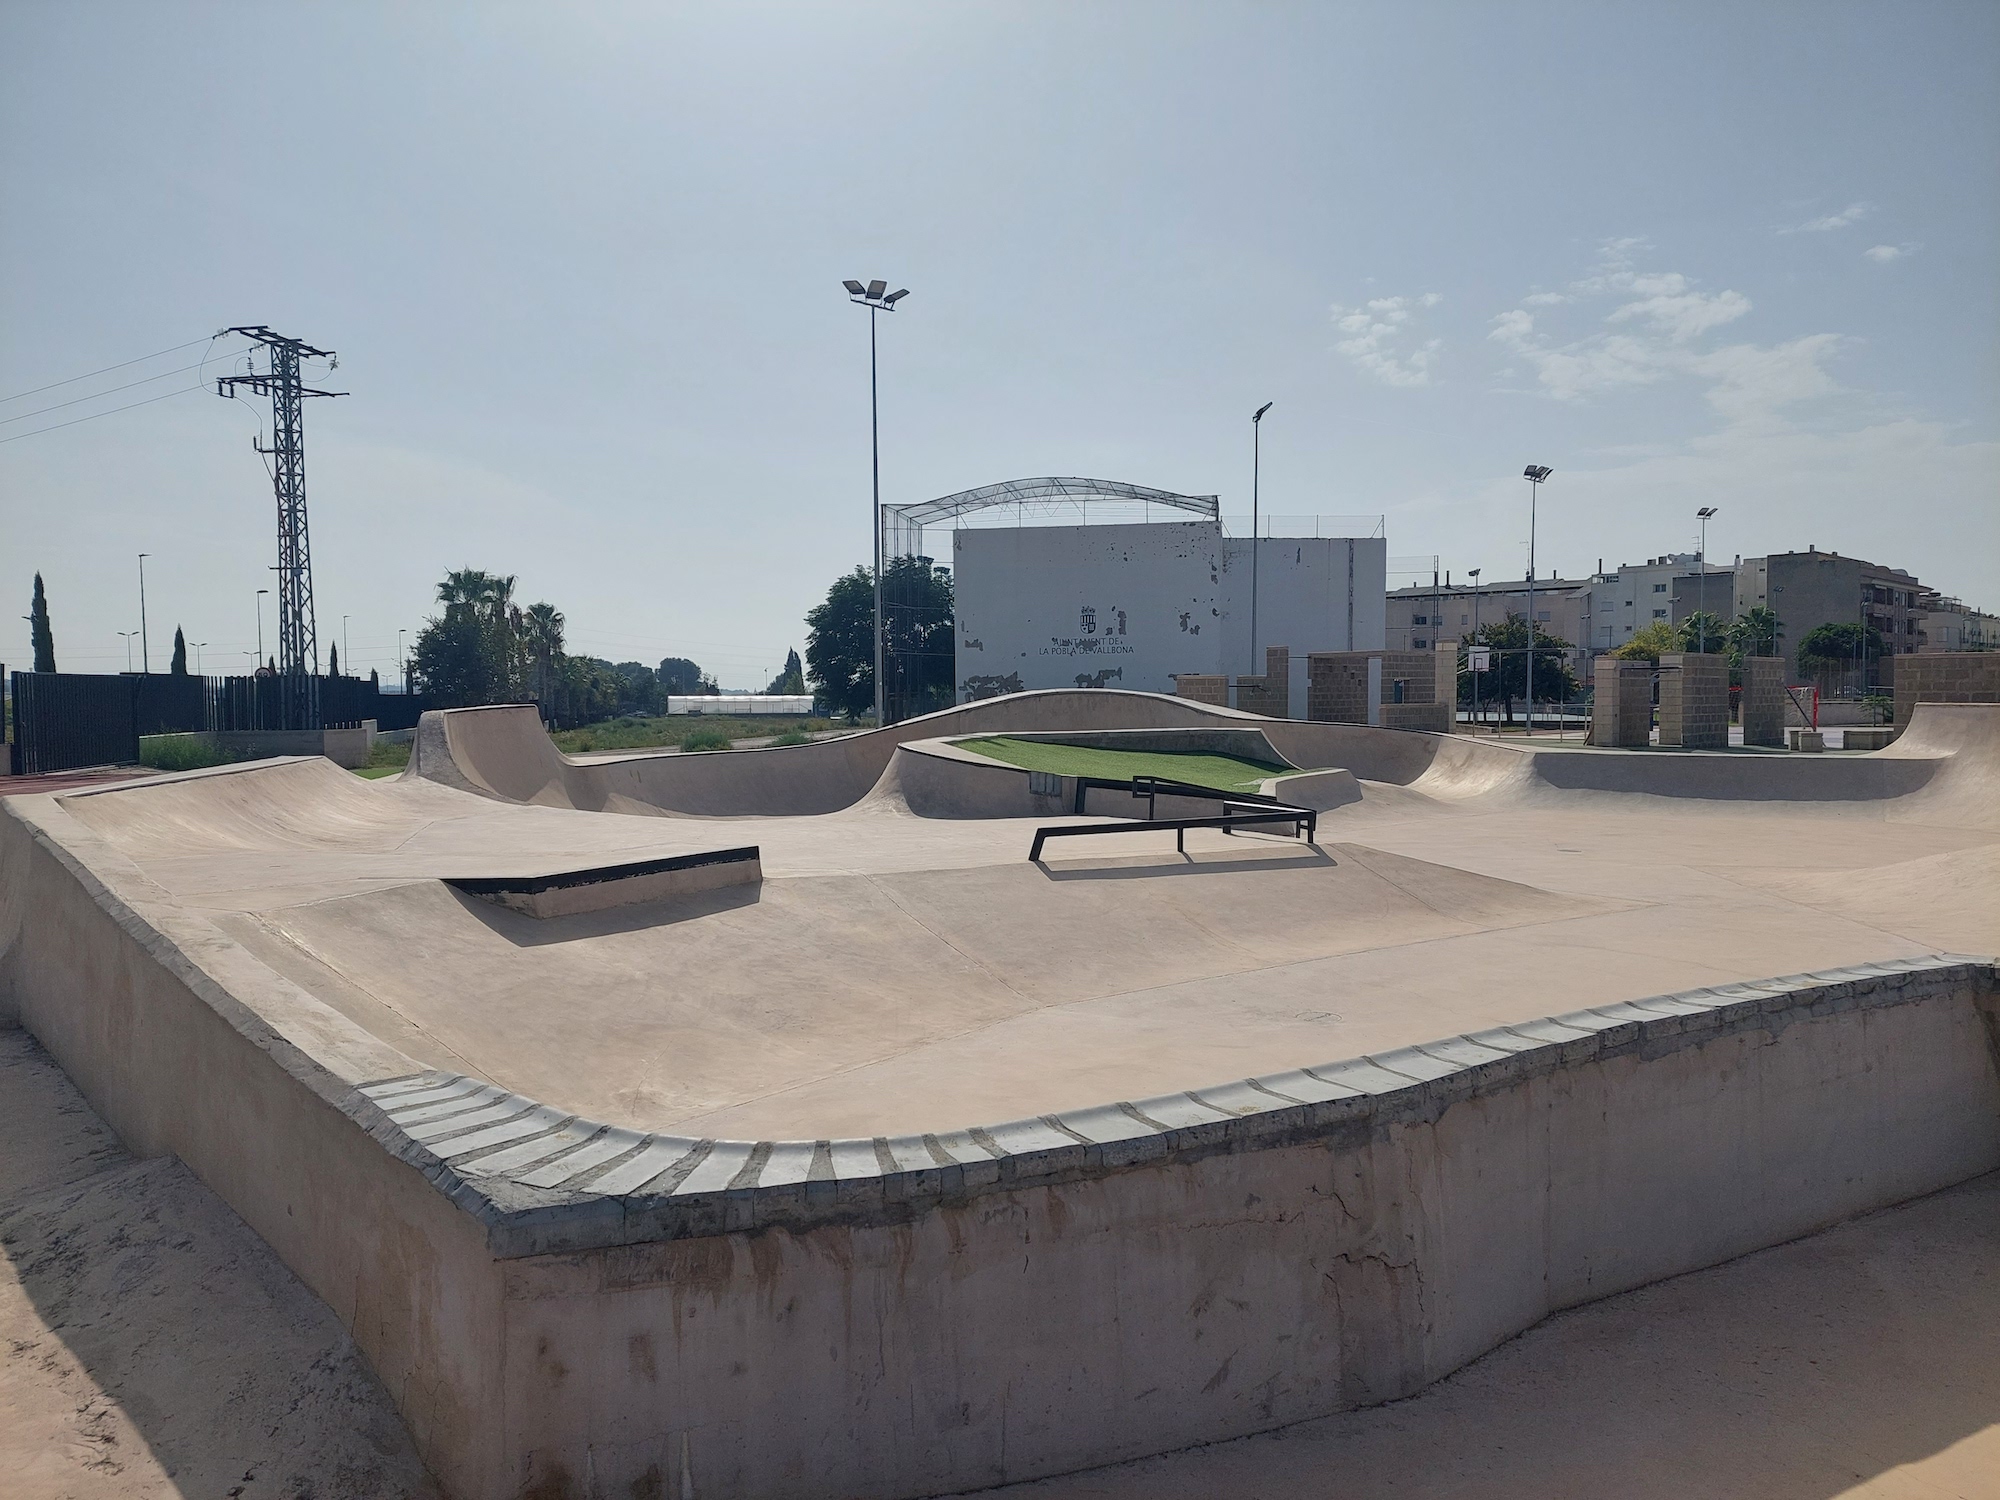 La Pobla de Vallbona skatepark